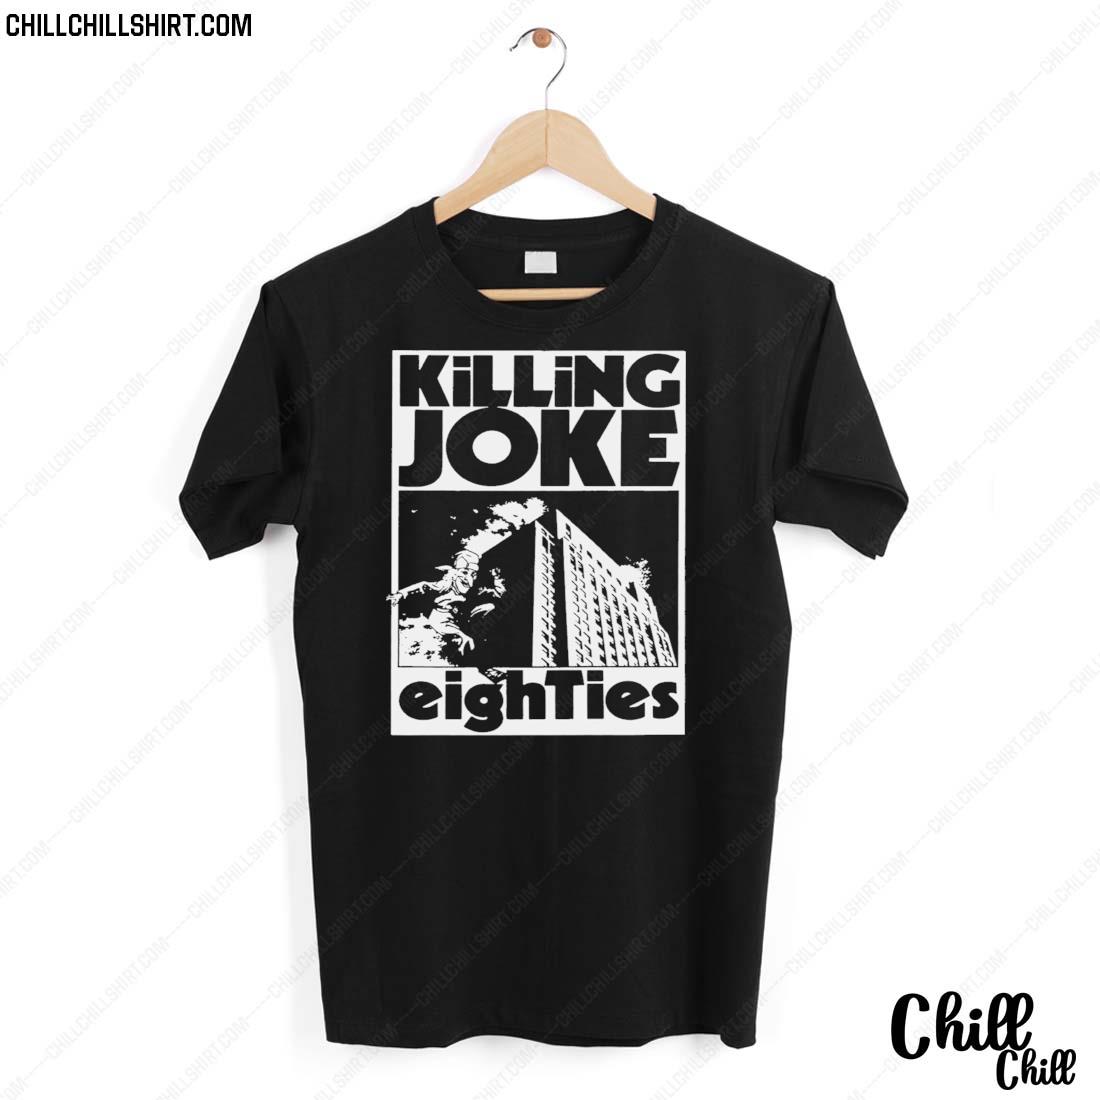 Nice killing Joke Eighties Graphic T-shirt